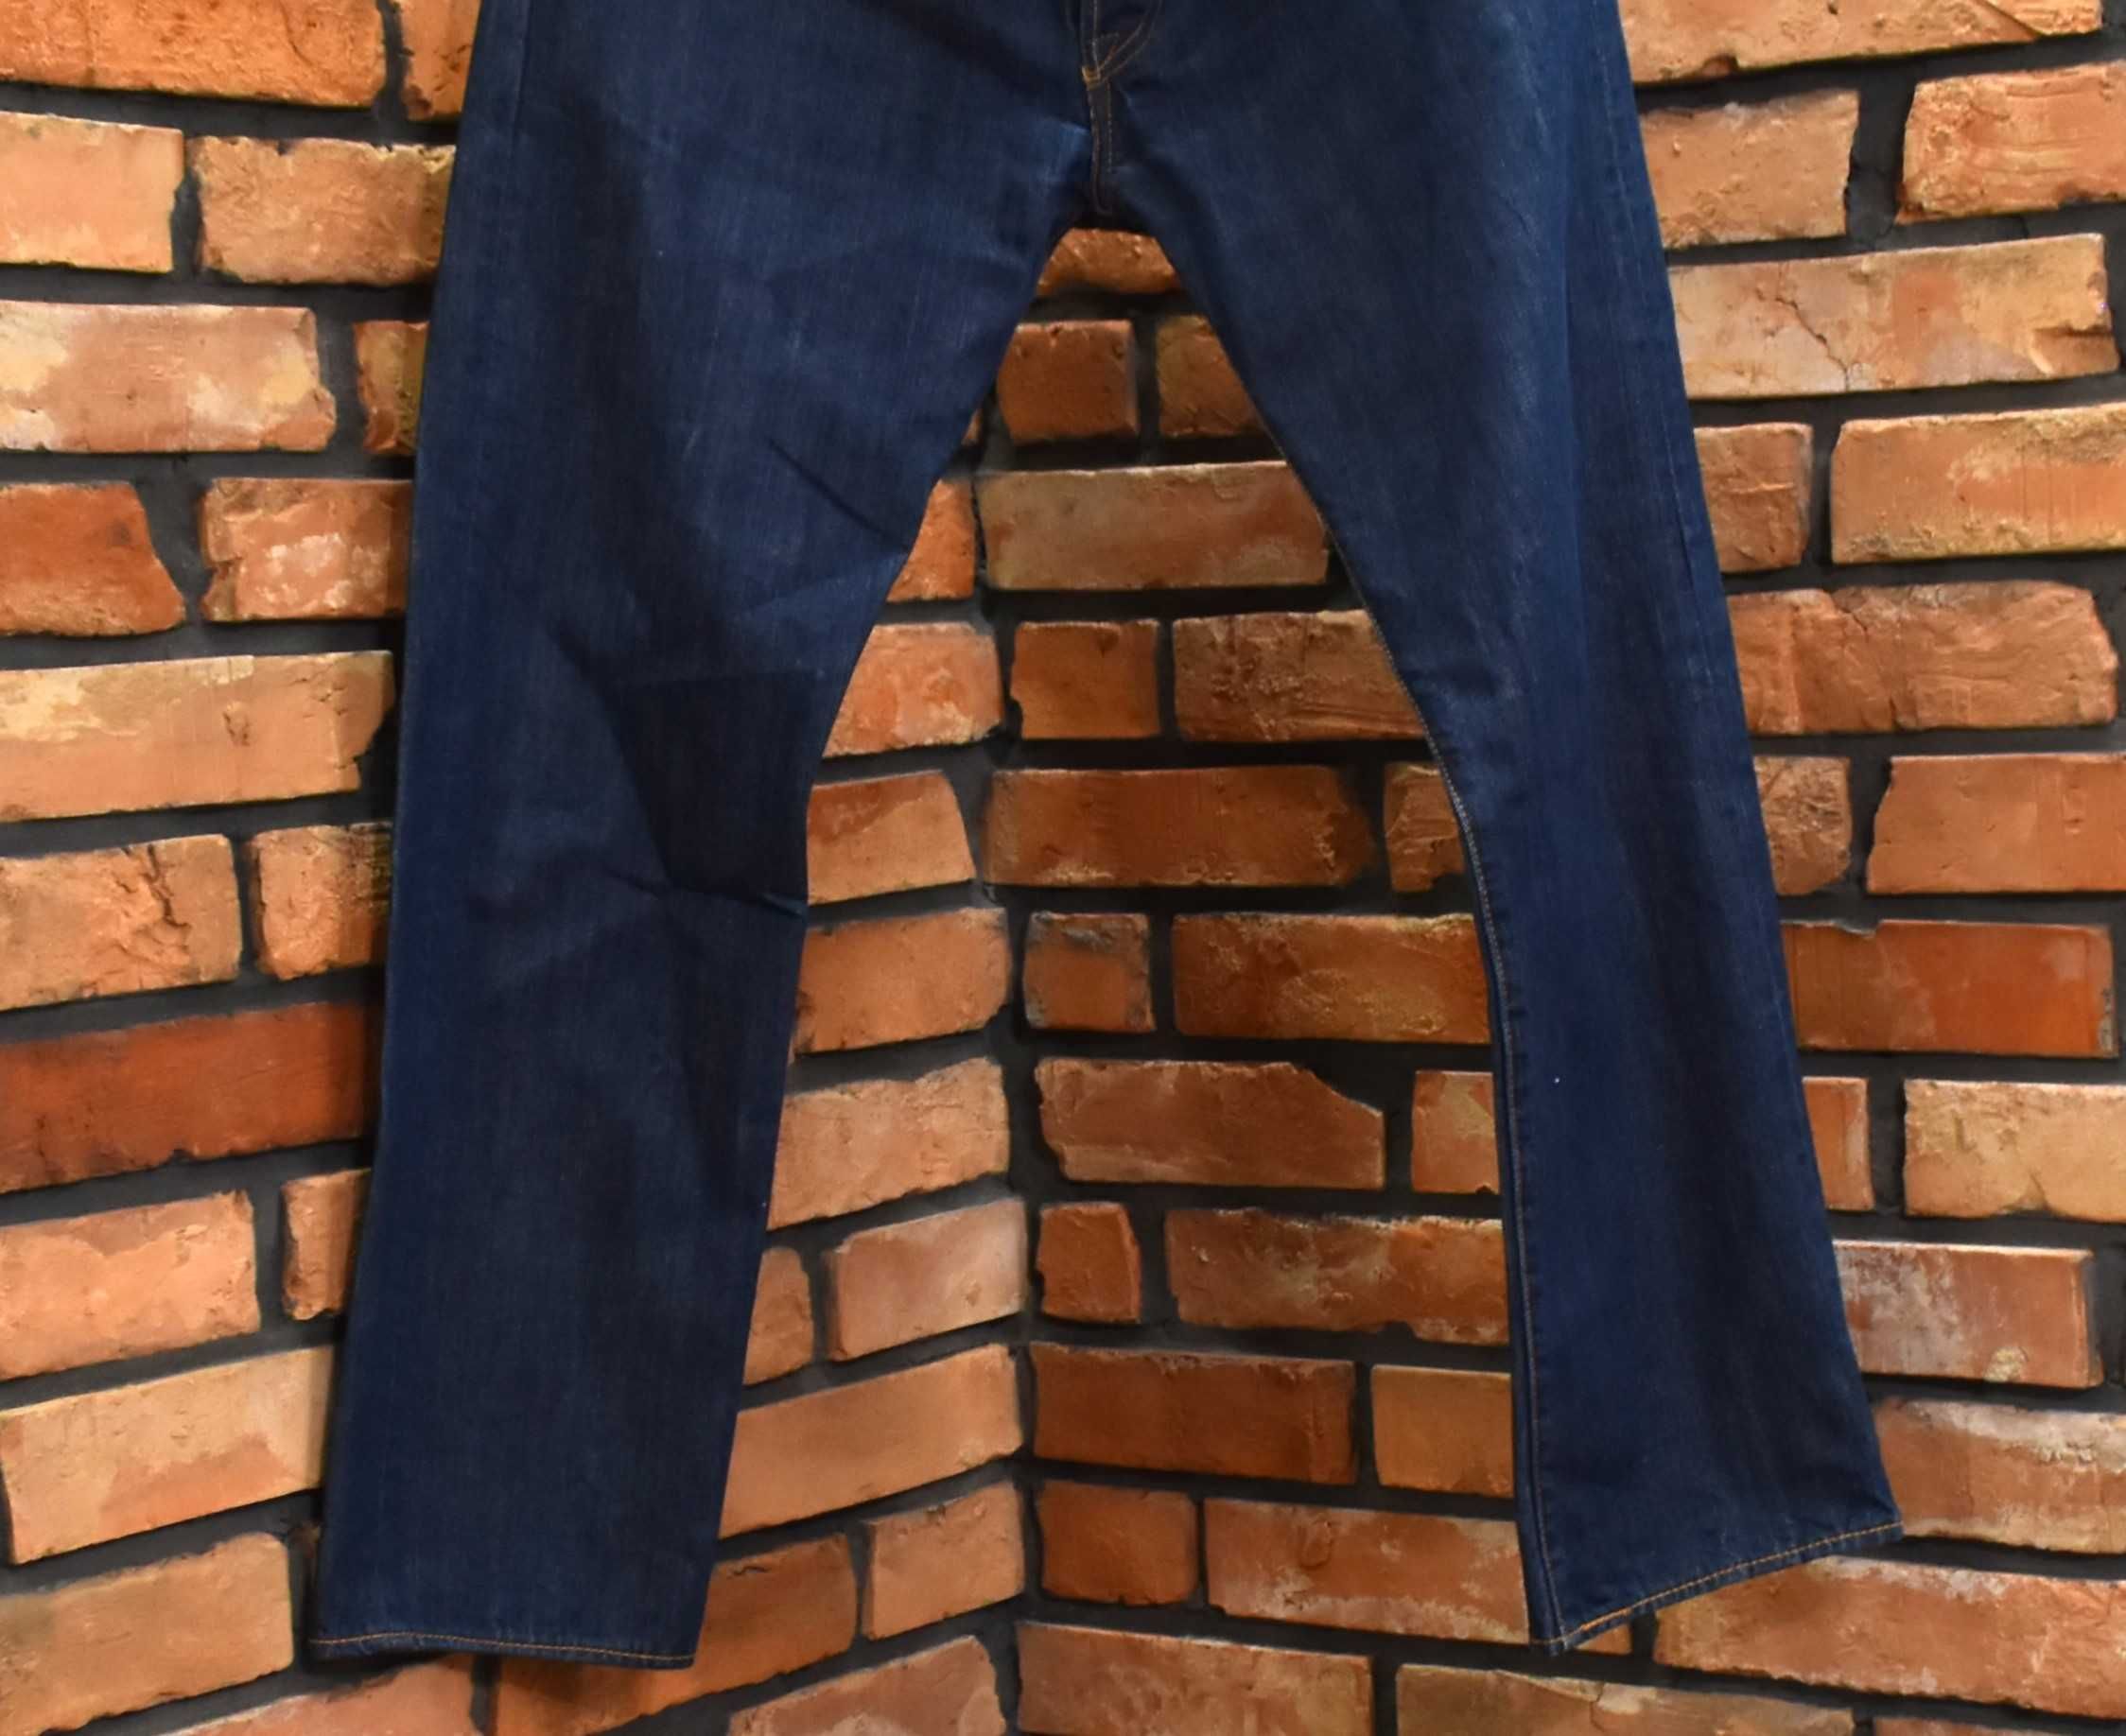 Levi's 501 granatowe klasyczne spodnie jeansy jak nowe W34 L30